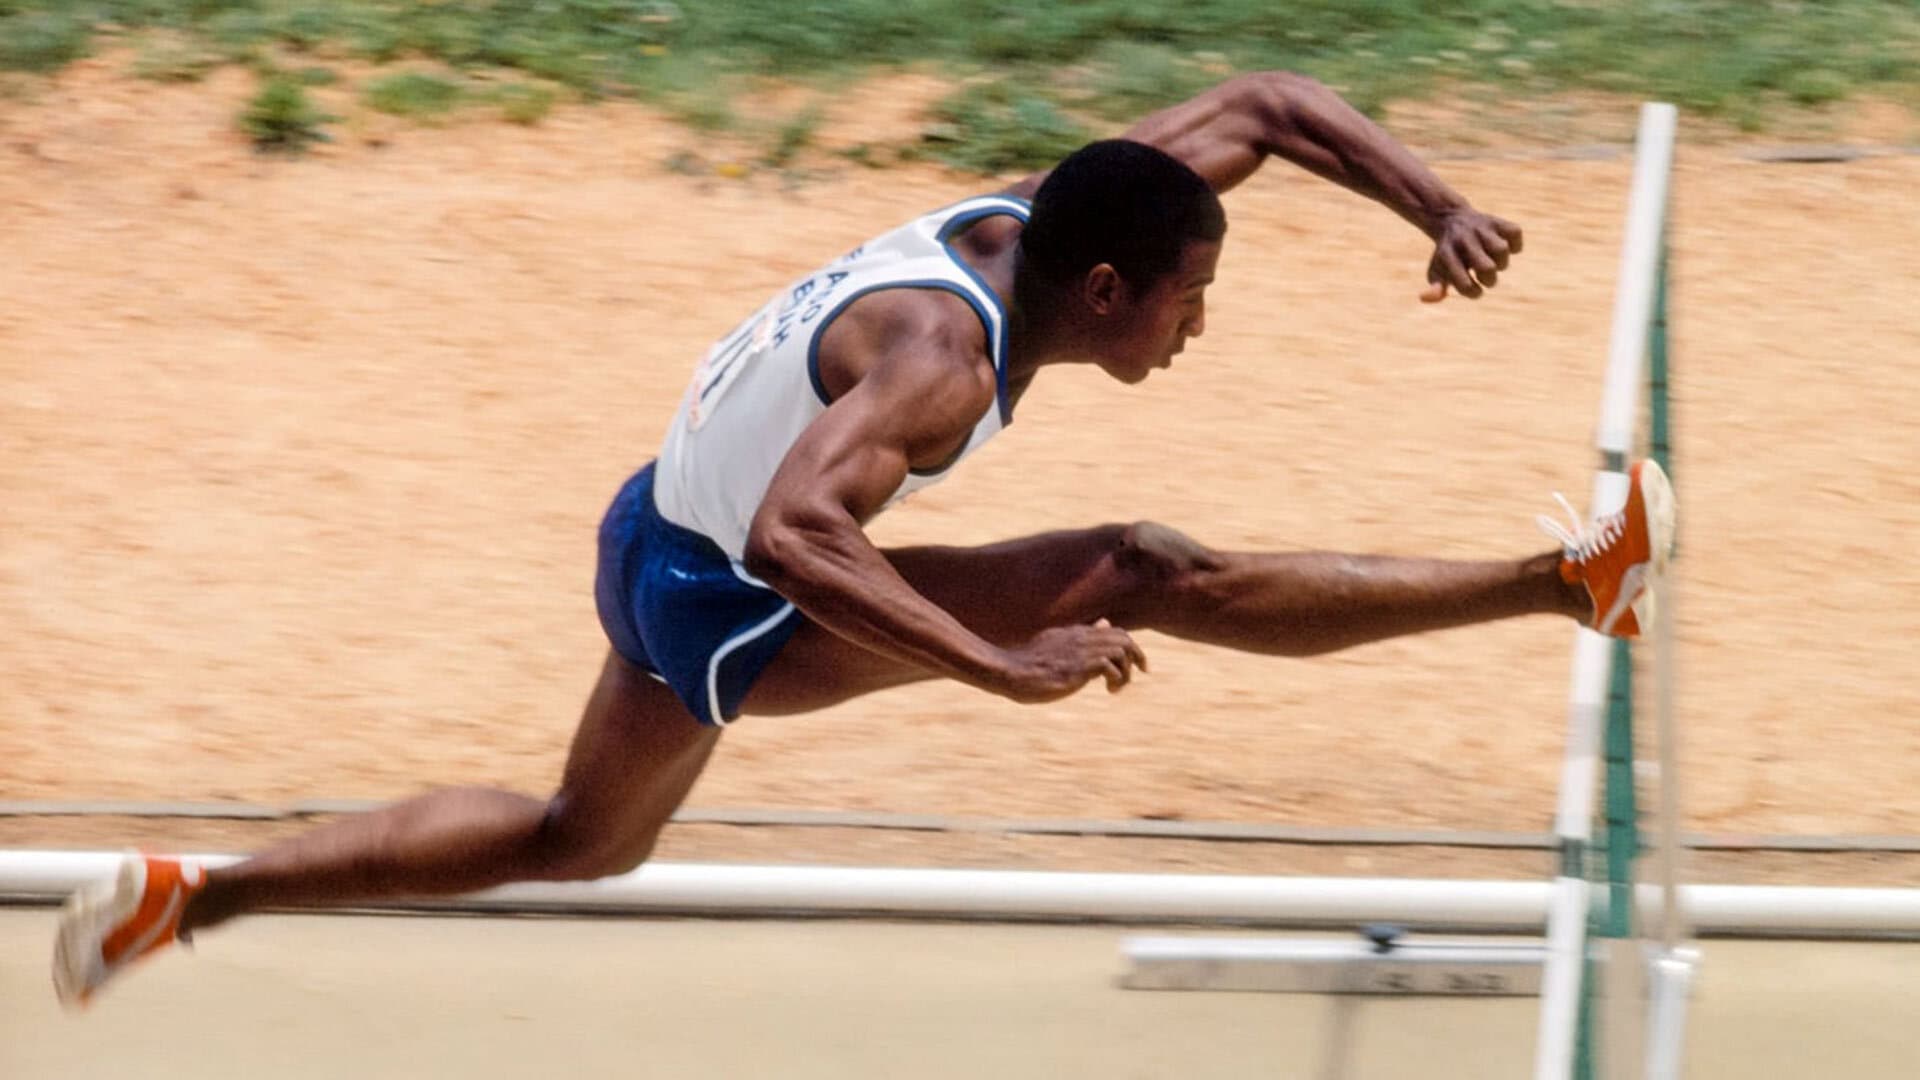 Nehemiah hurdles a hurdle in the 110-hurdles at the 1980 U.S. Olympic trials.